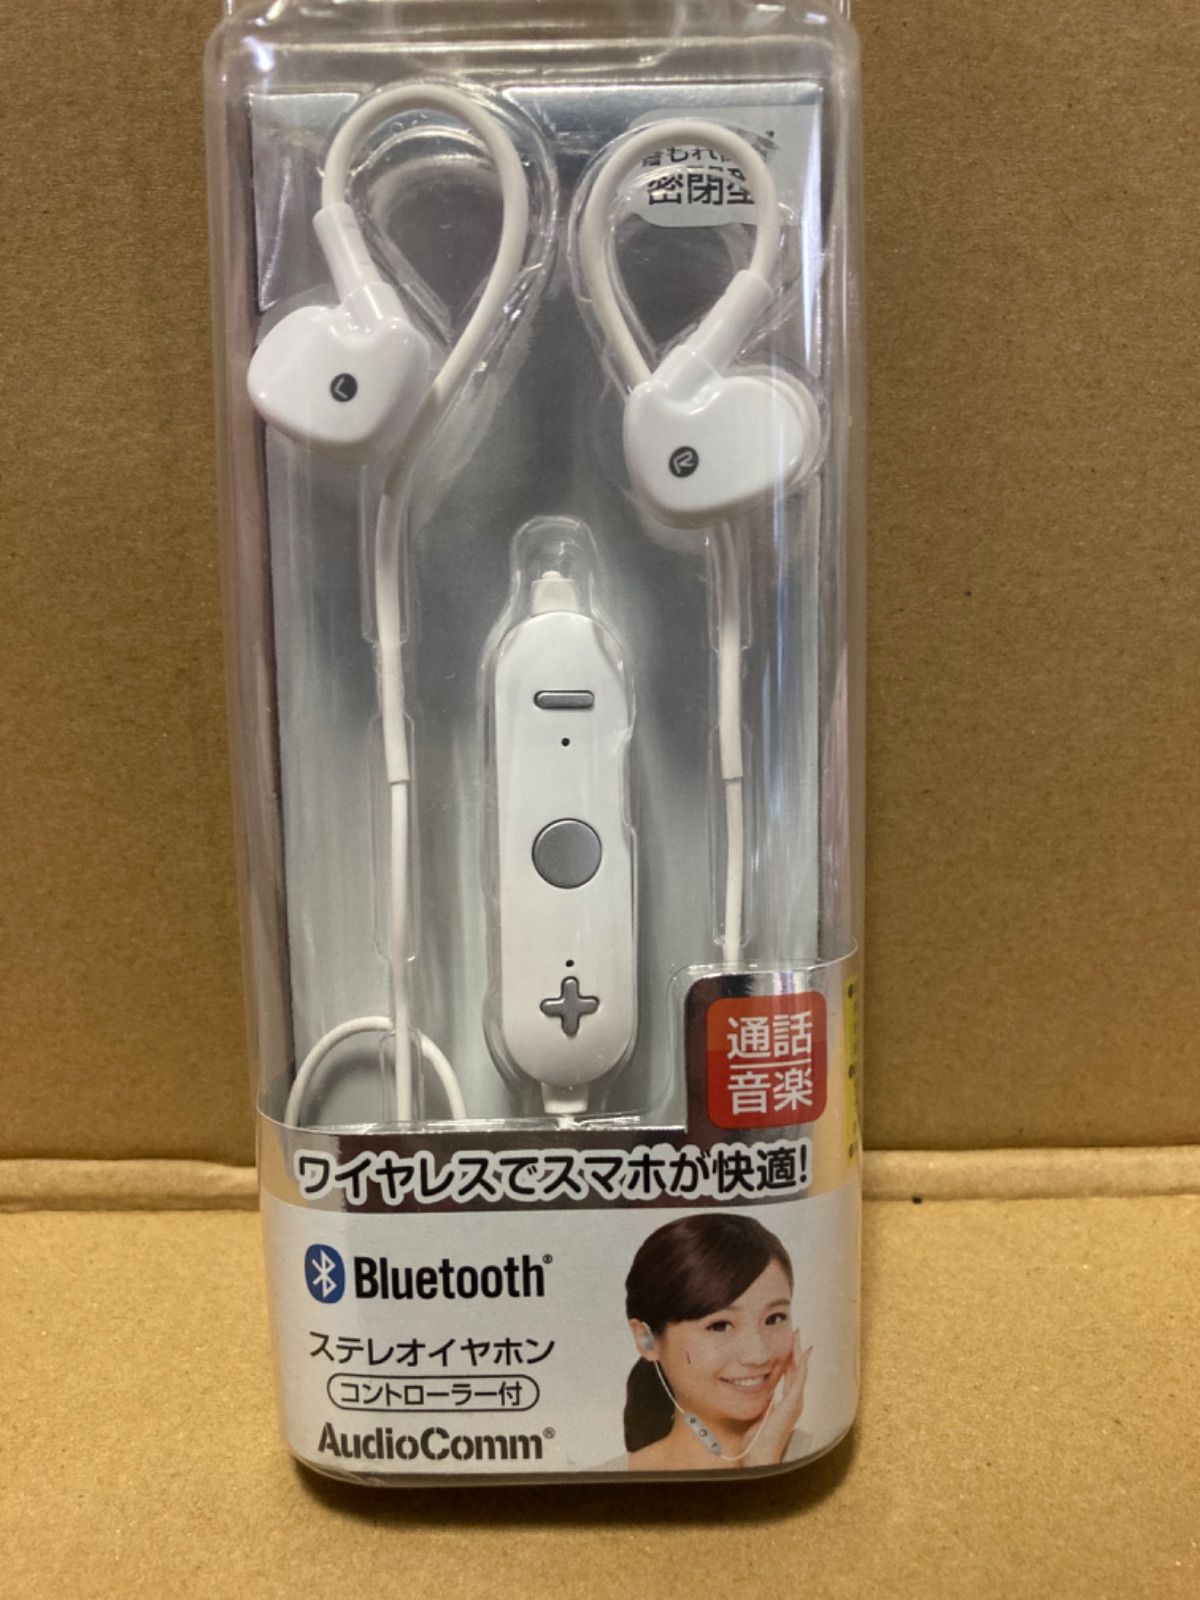 AudioComm Bluetooth ワイヤレス ステレオイヤホン ホワイト [品番]03